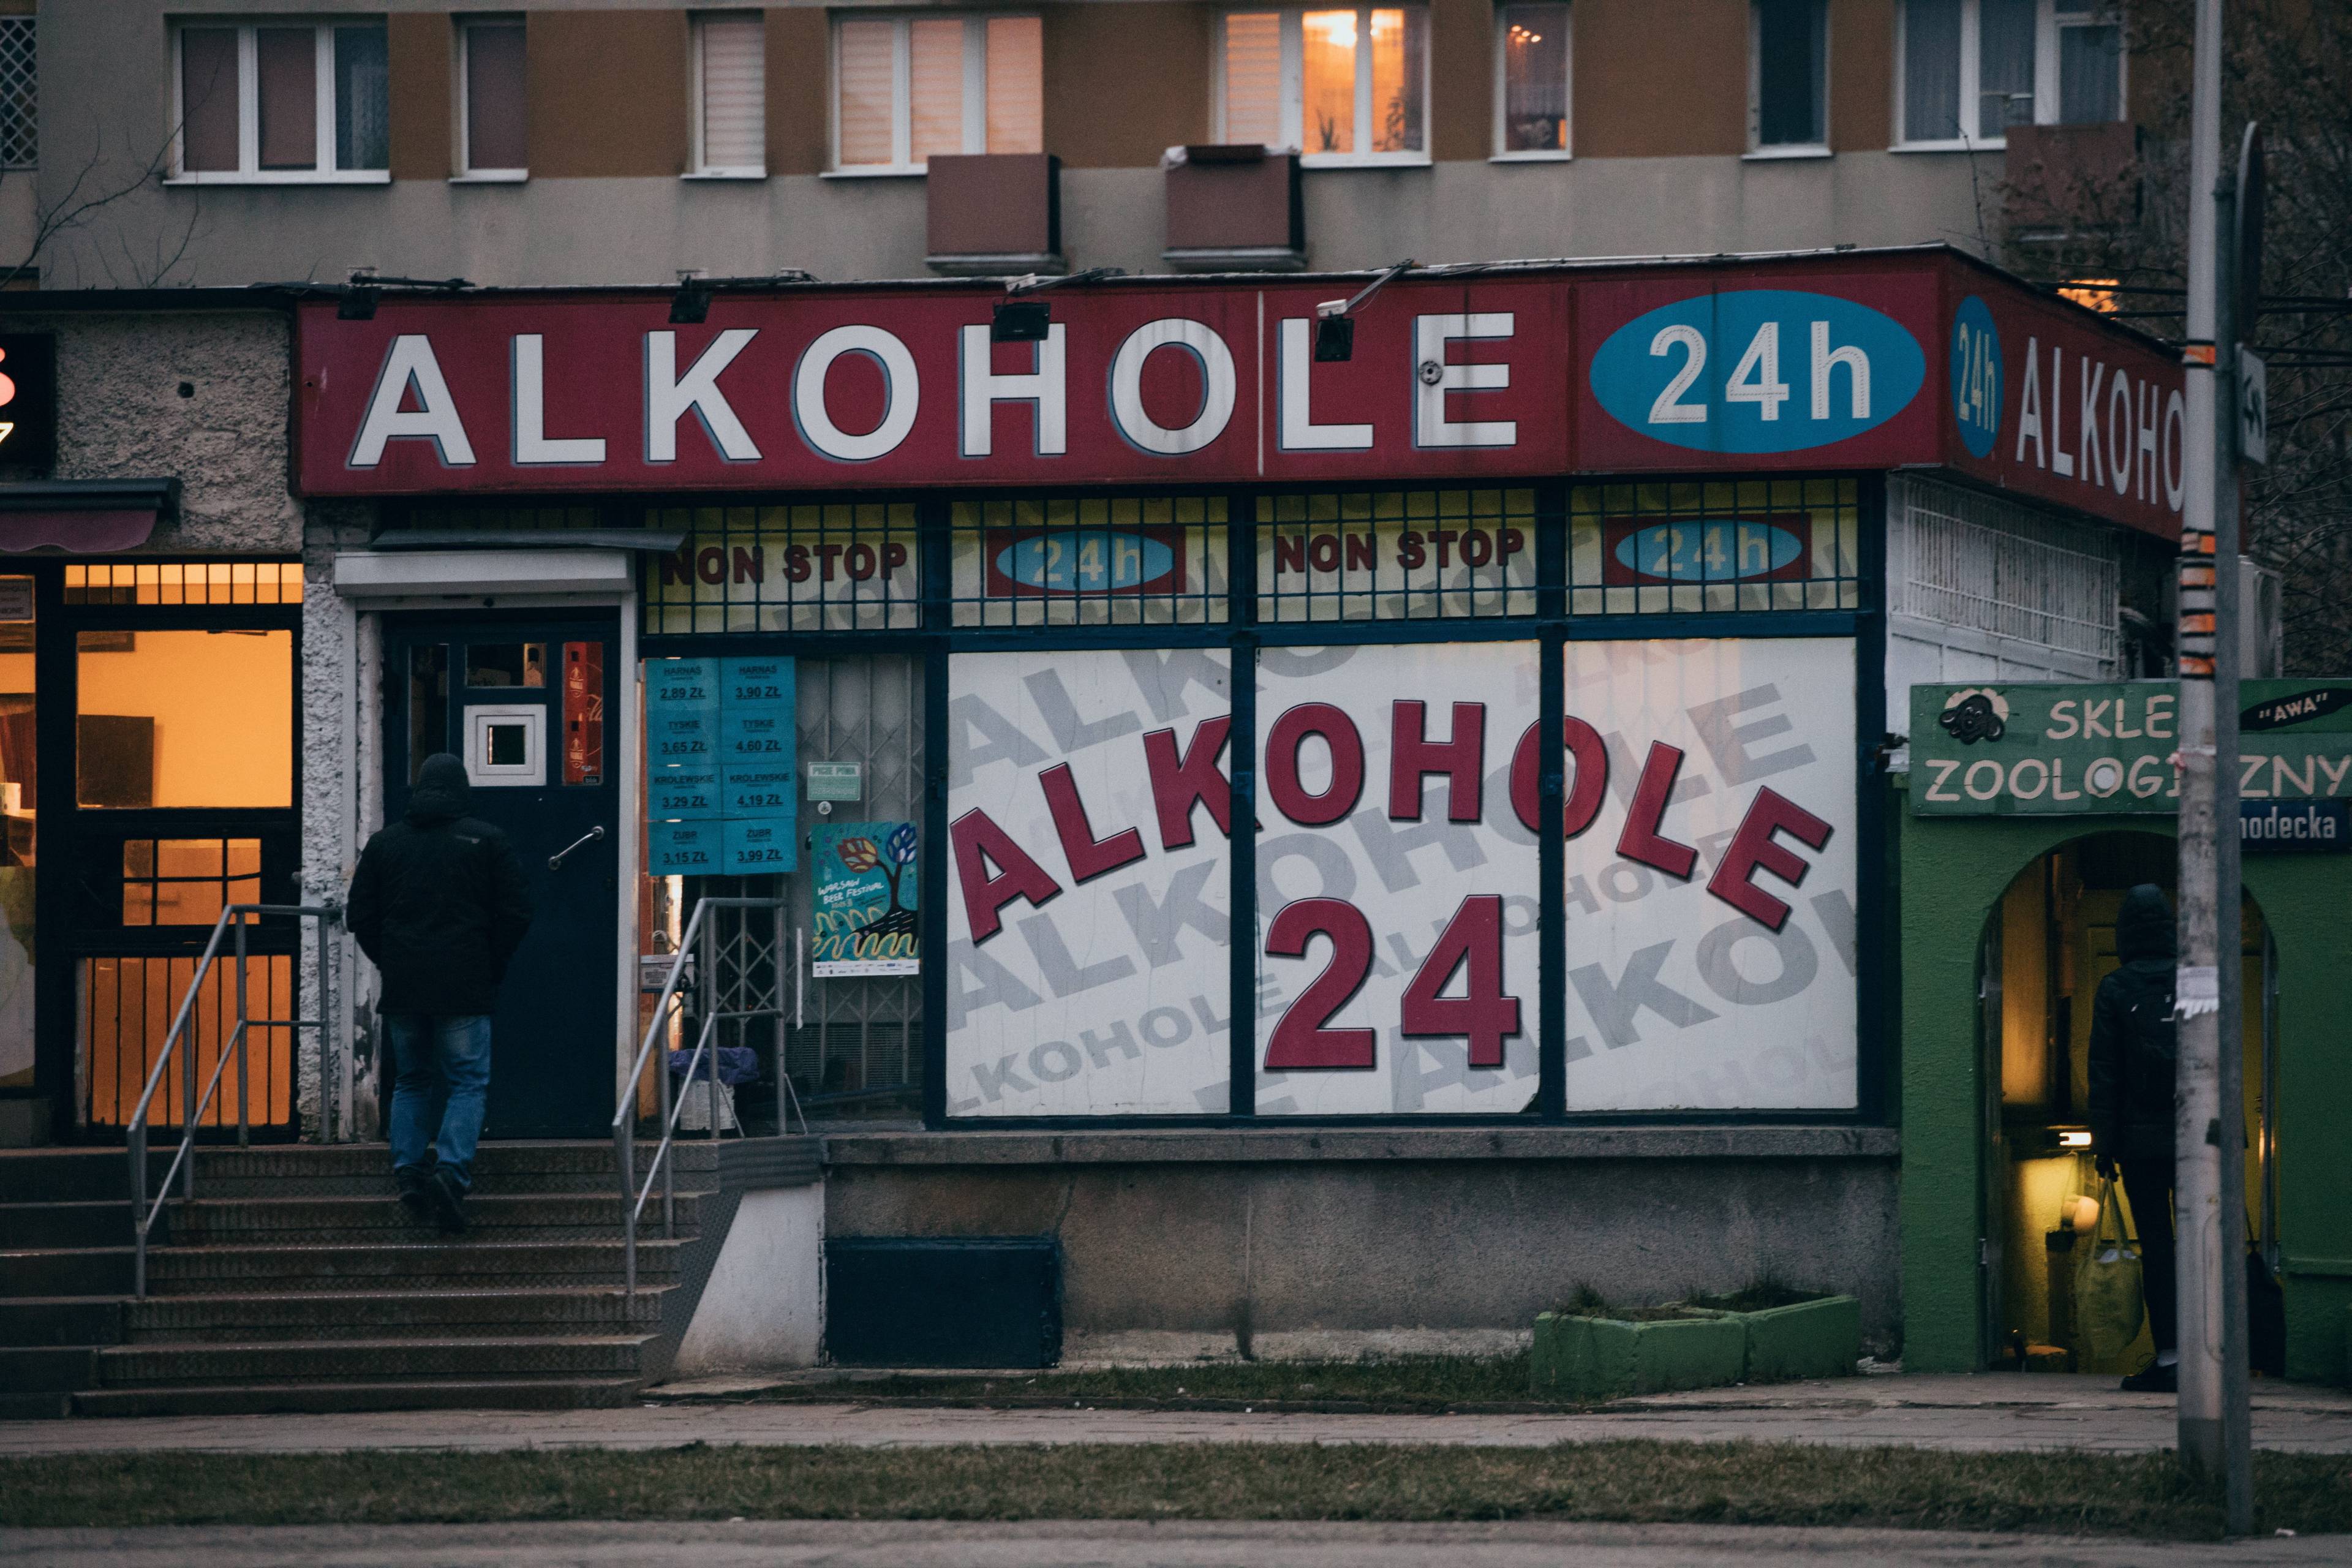 witryna sklepowa z napisem "Alkohole 24"